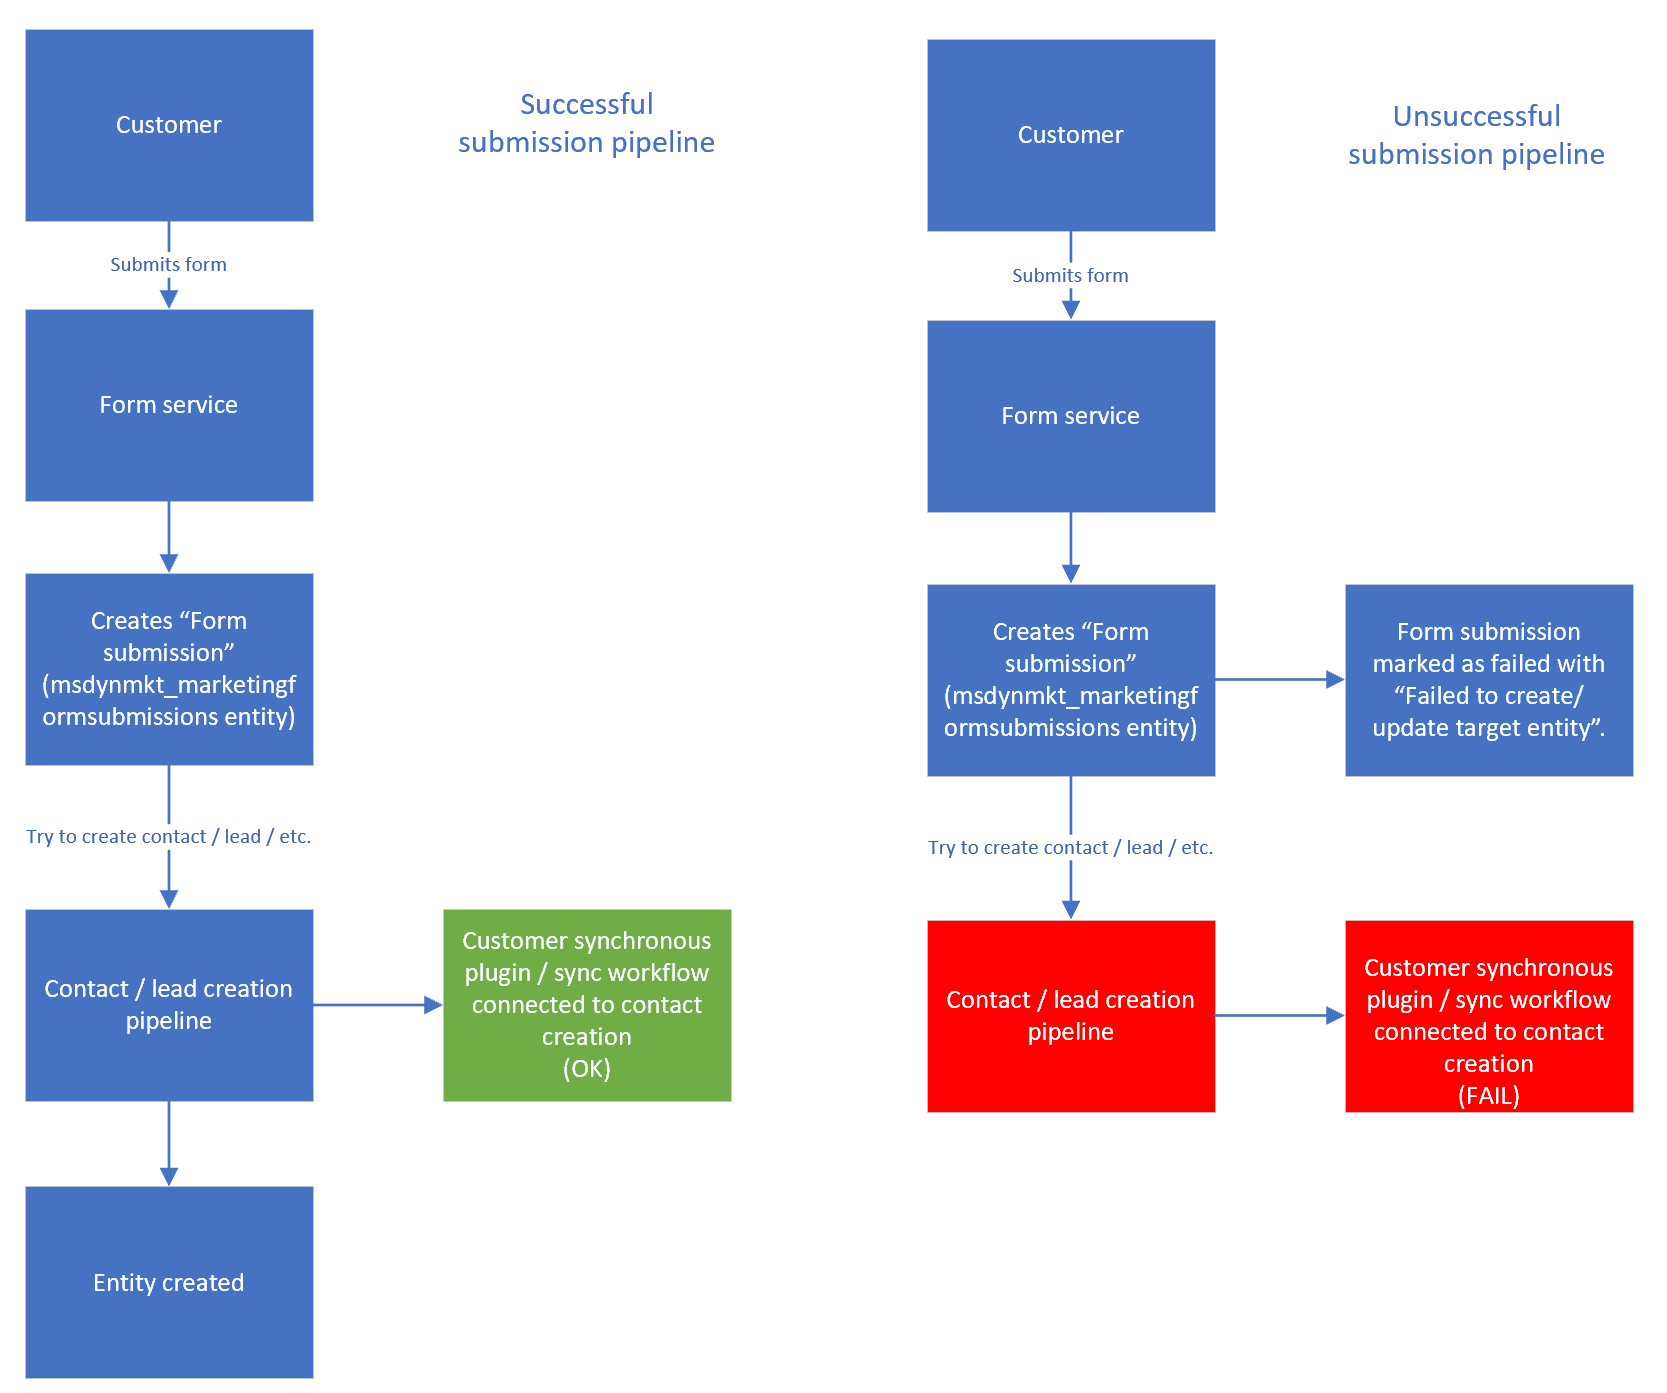 Diagramm zum Vergleich einer erfolgreichen Übermittlungspipeline mit einer erfolglosen Übermittlungspipeline.